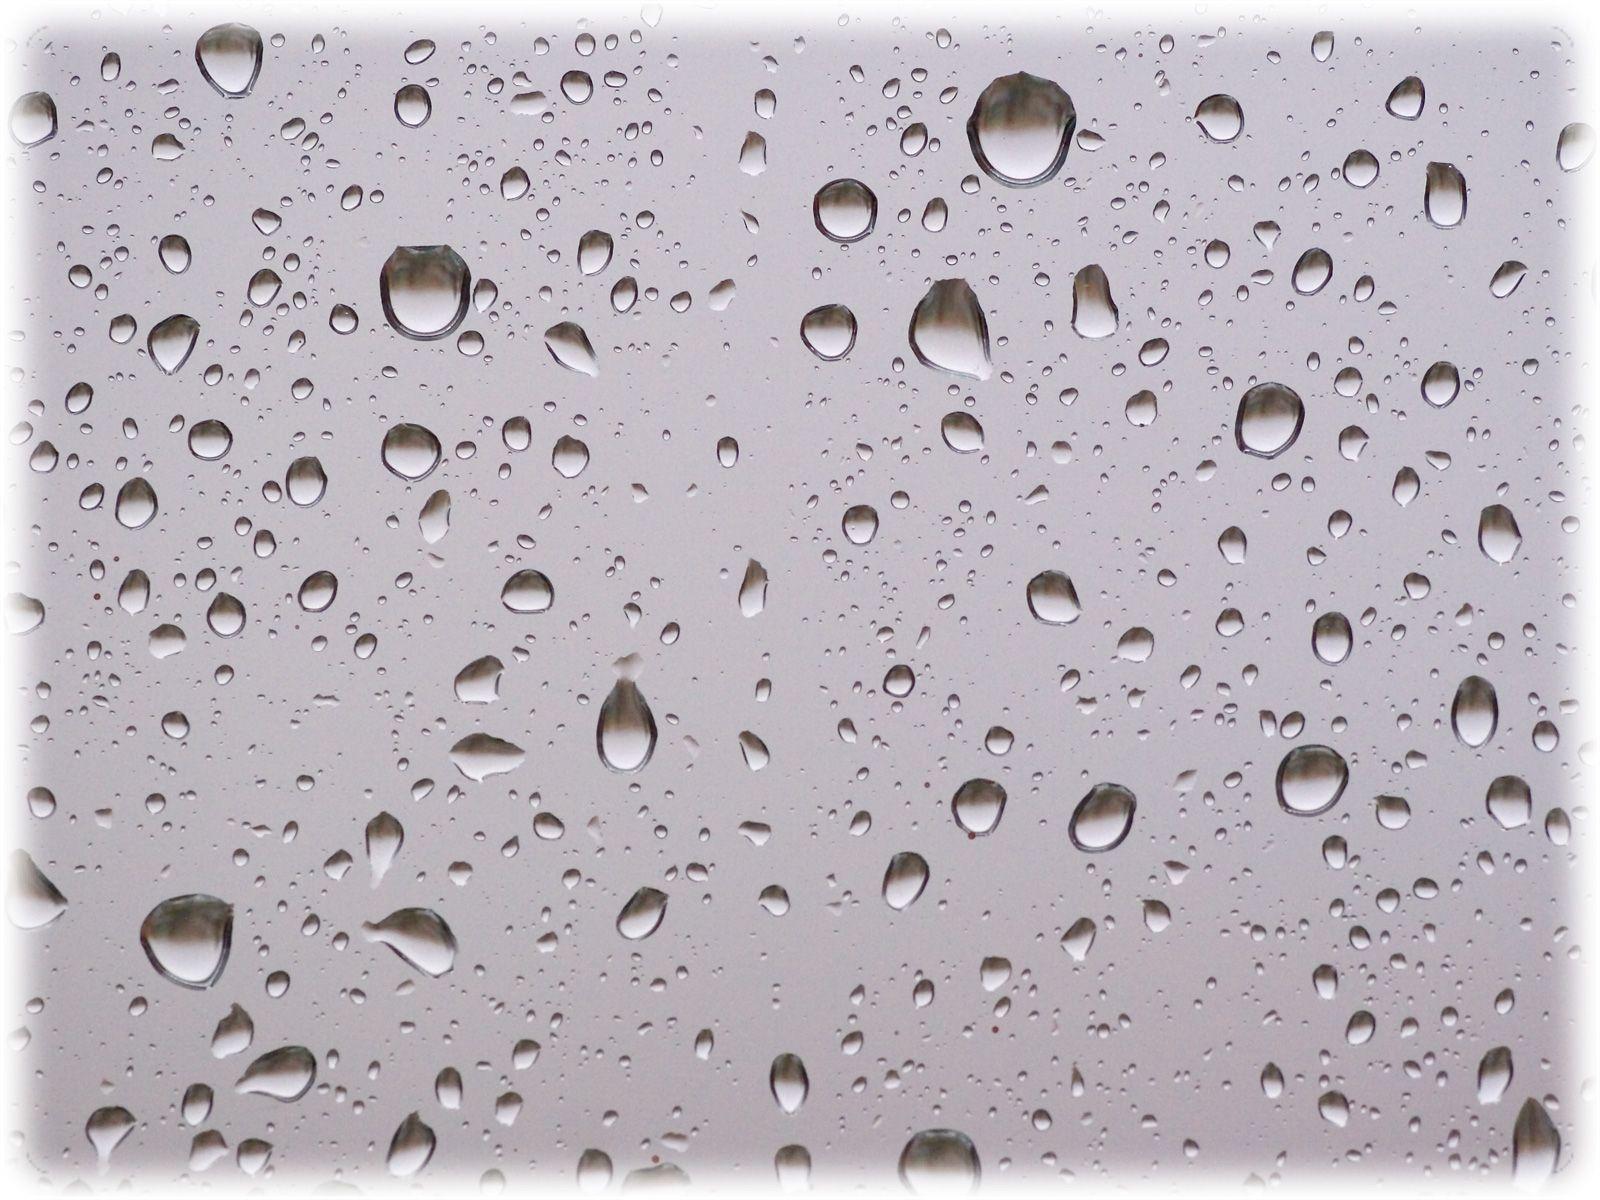 Wallpaper For > Apple Raindrops Wallpaper